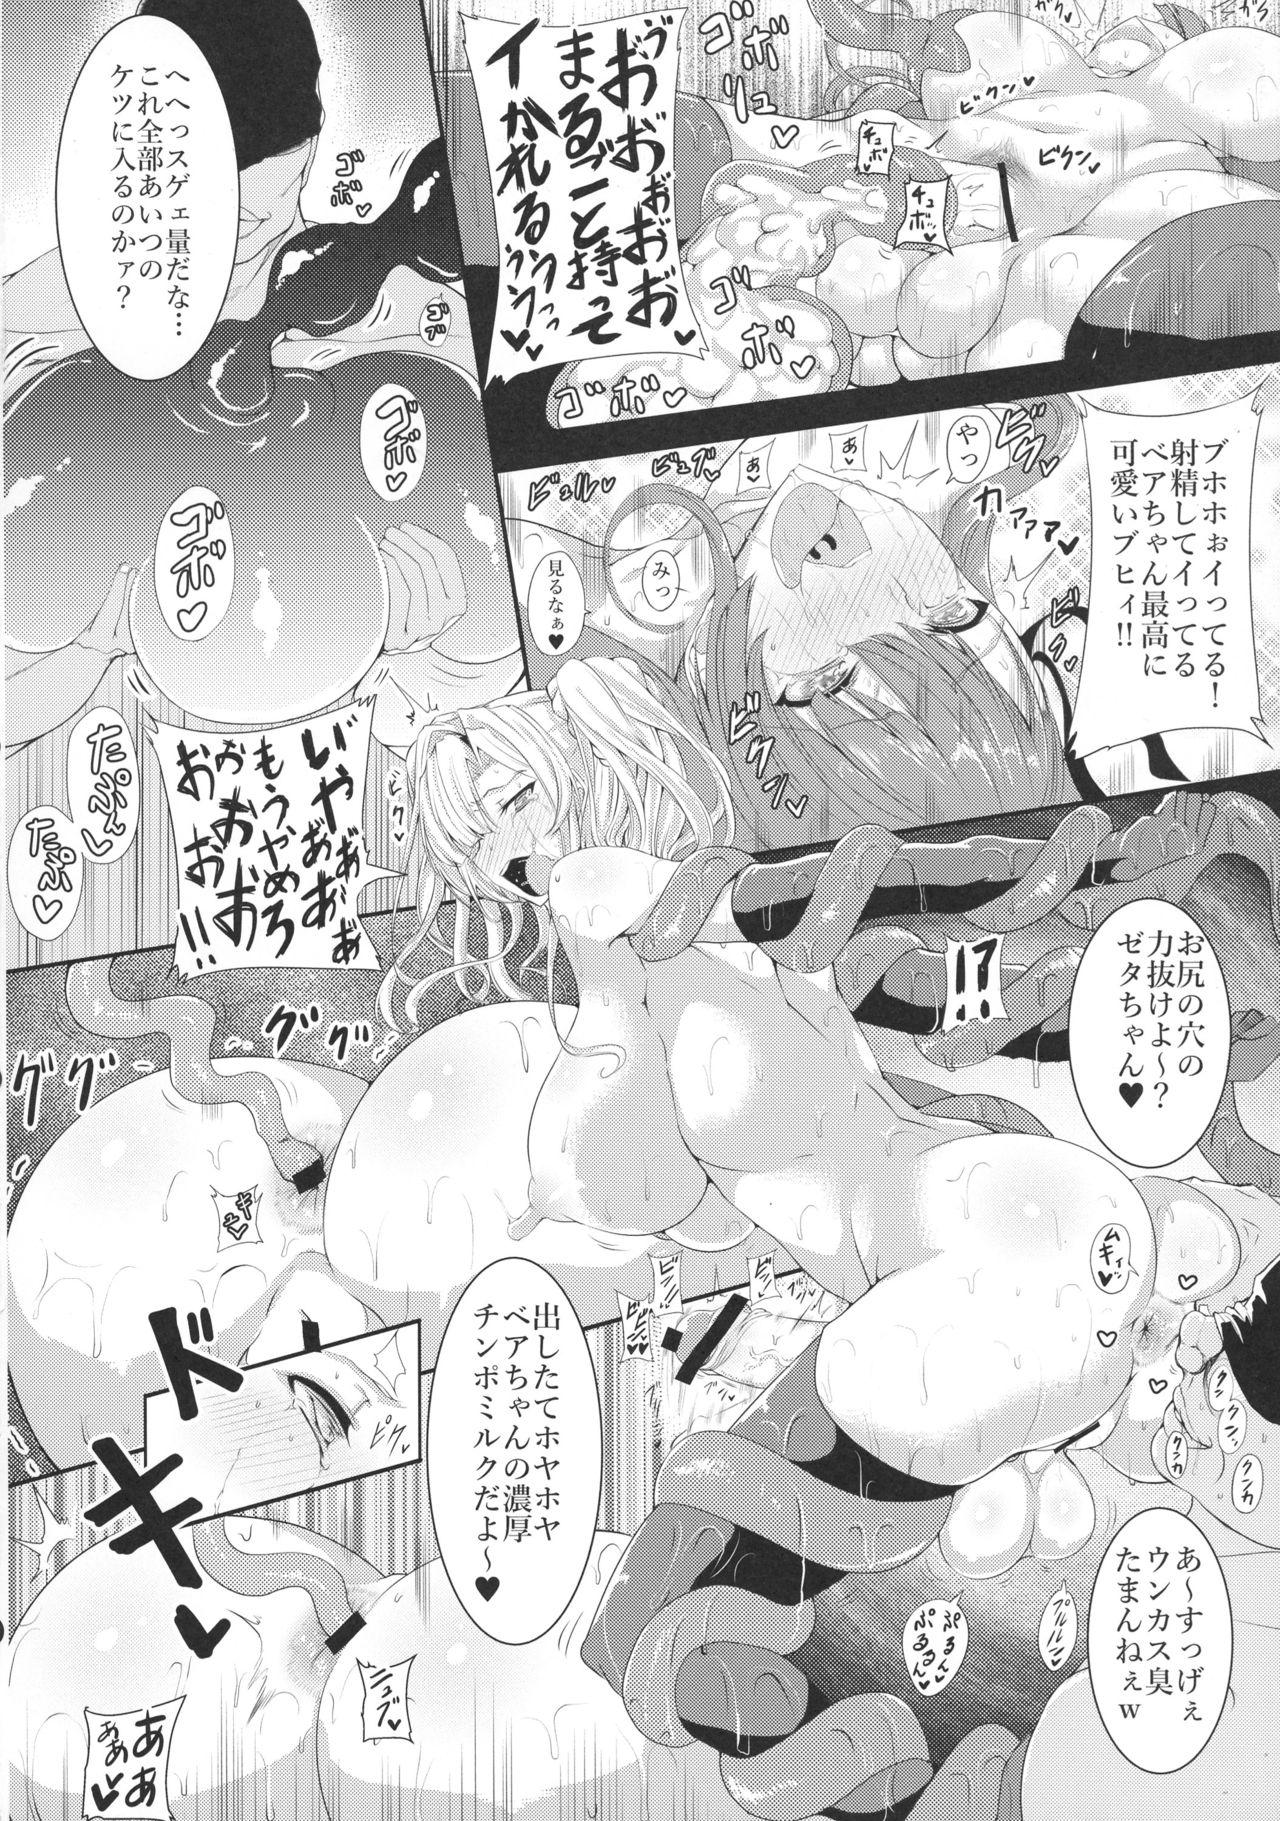 Japan HTSK5 - Granblue fantasy Oral - Page 10